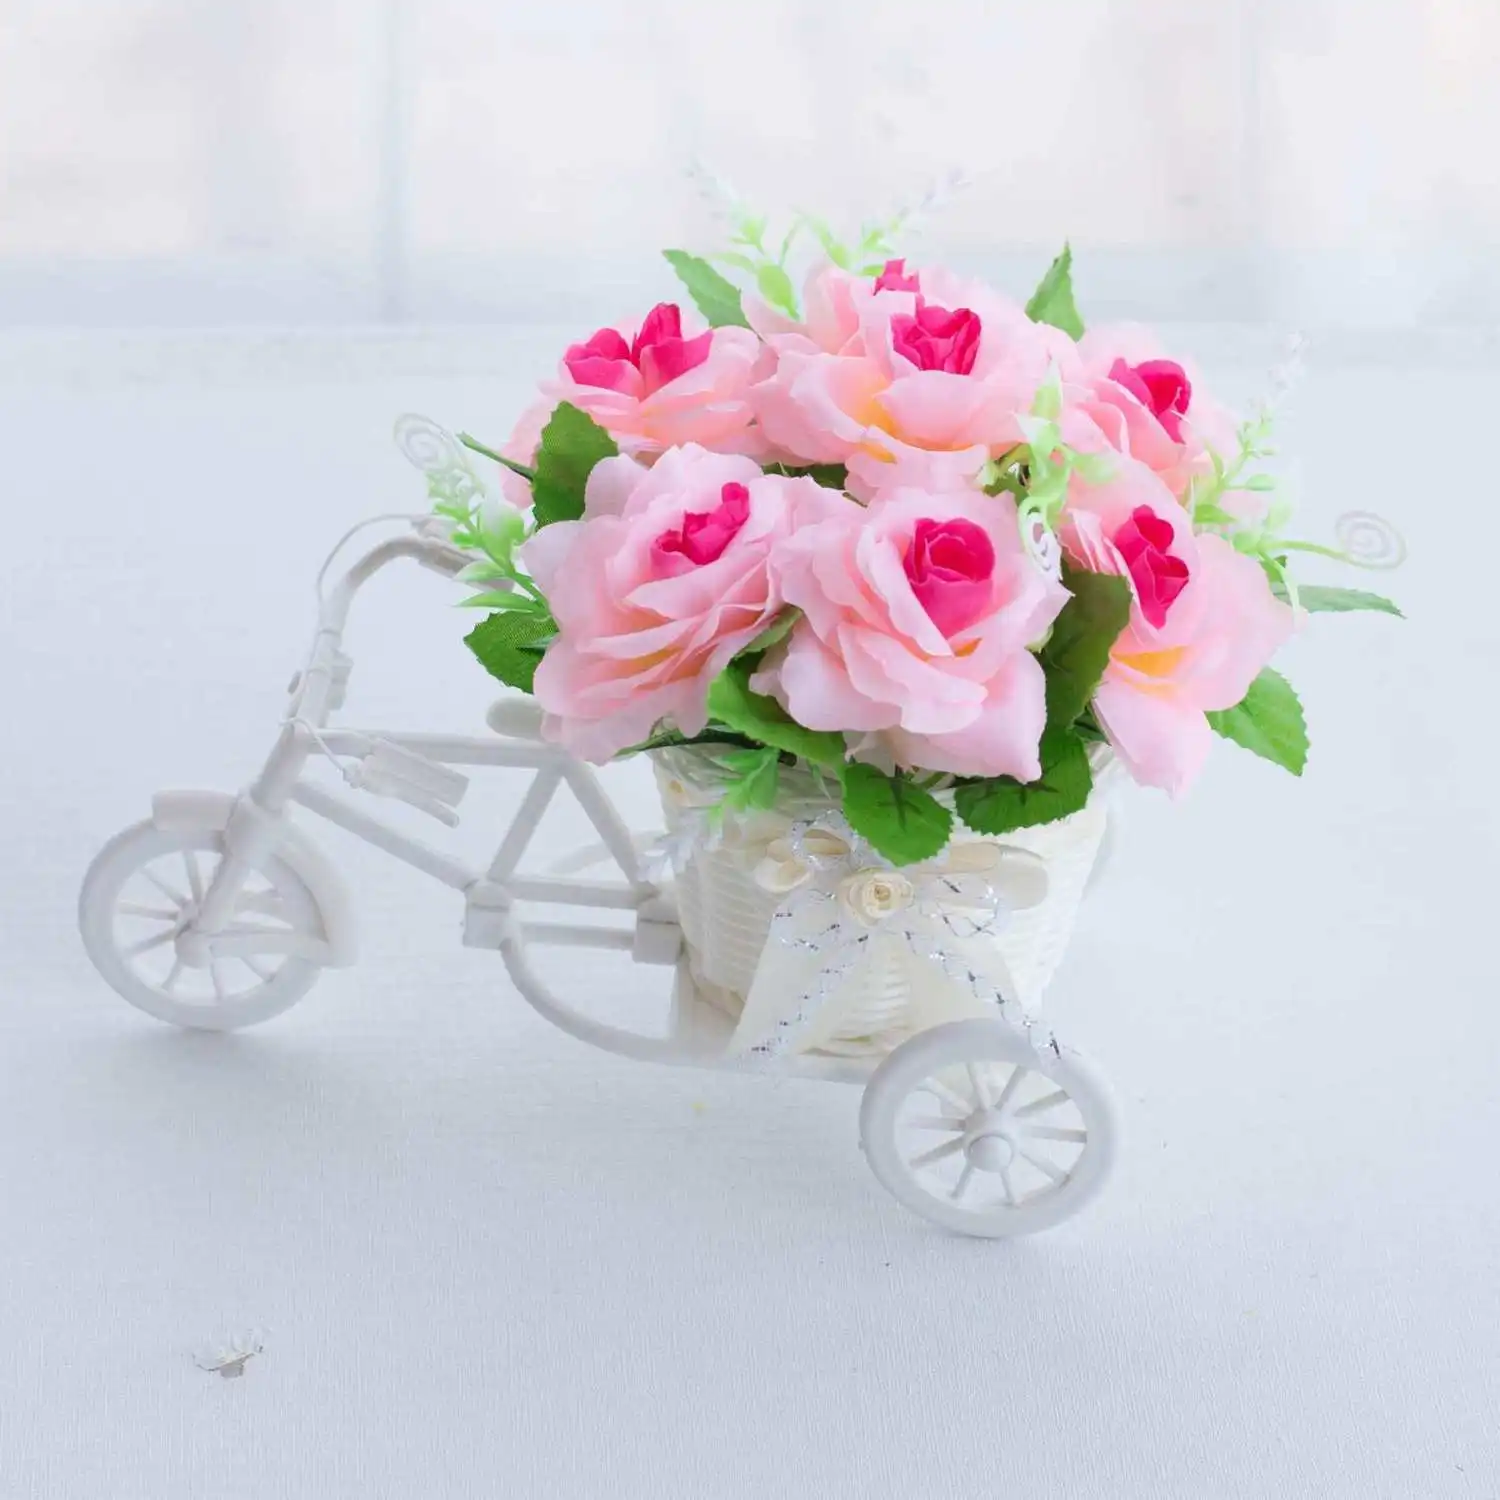 Umjetni cvijet bicikl košarica za cvijeće lažni azaleja ruže bicikl košarica za cvijeće пасторальный Kuća Dnevni boravak Ukras Cvijeće